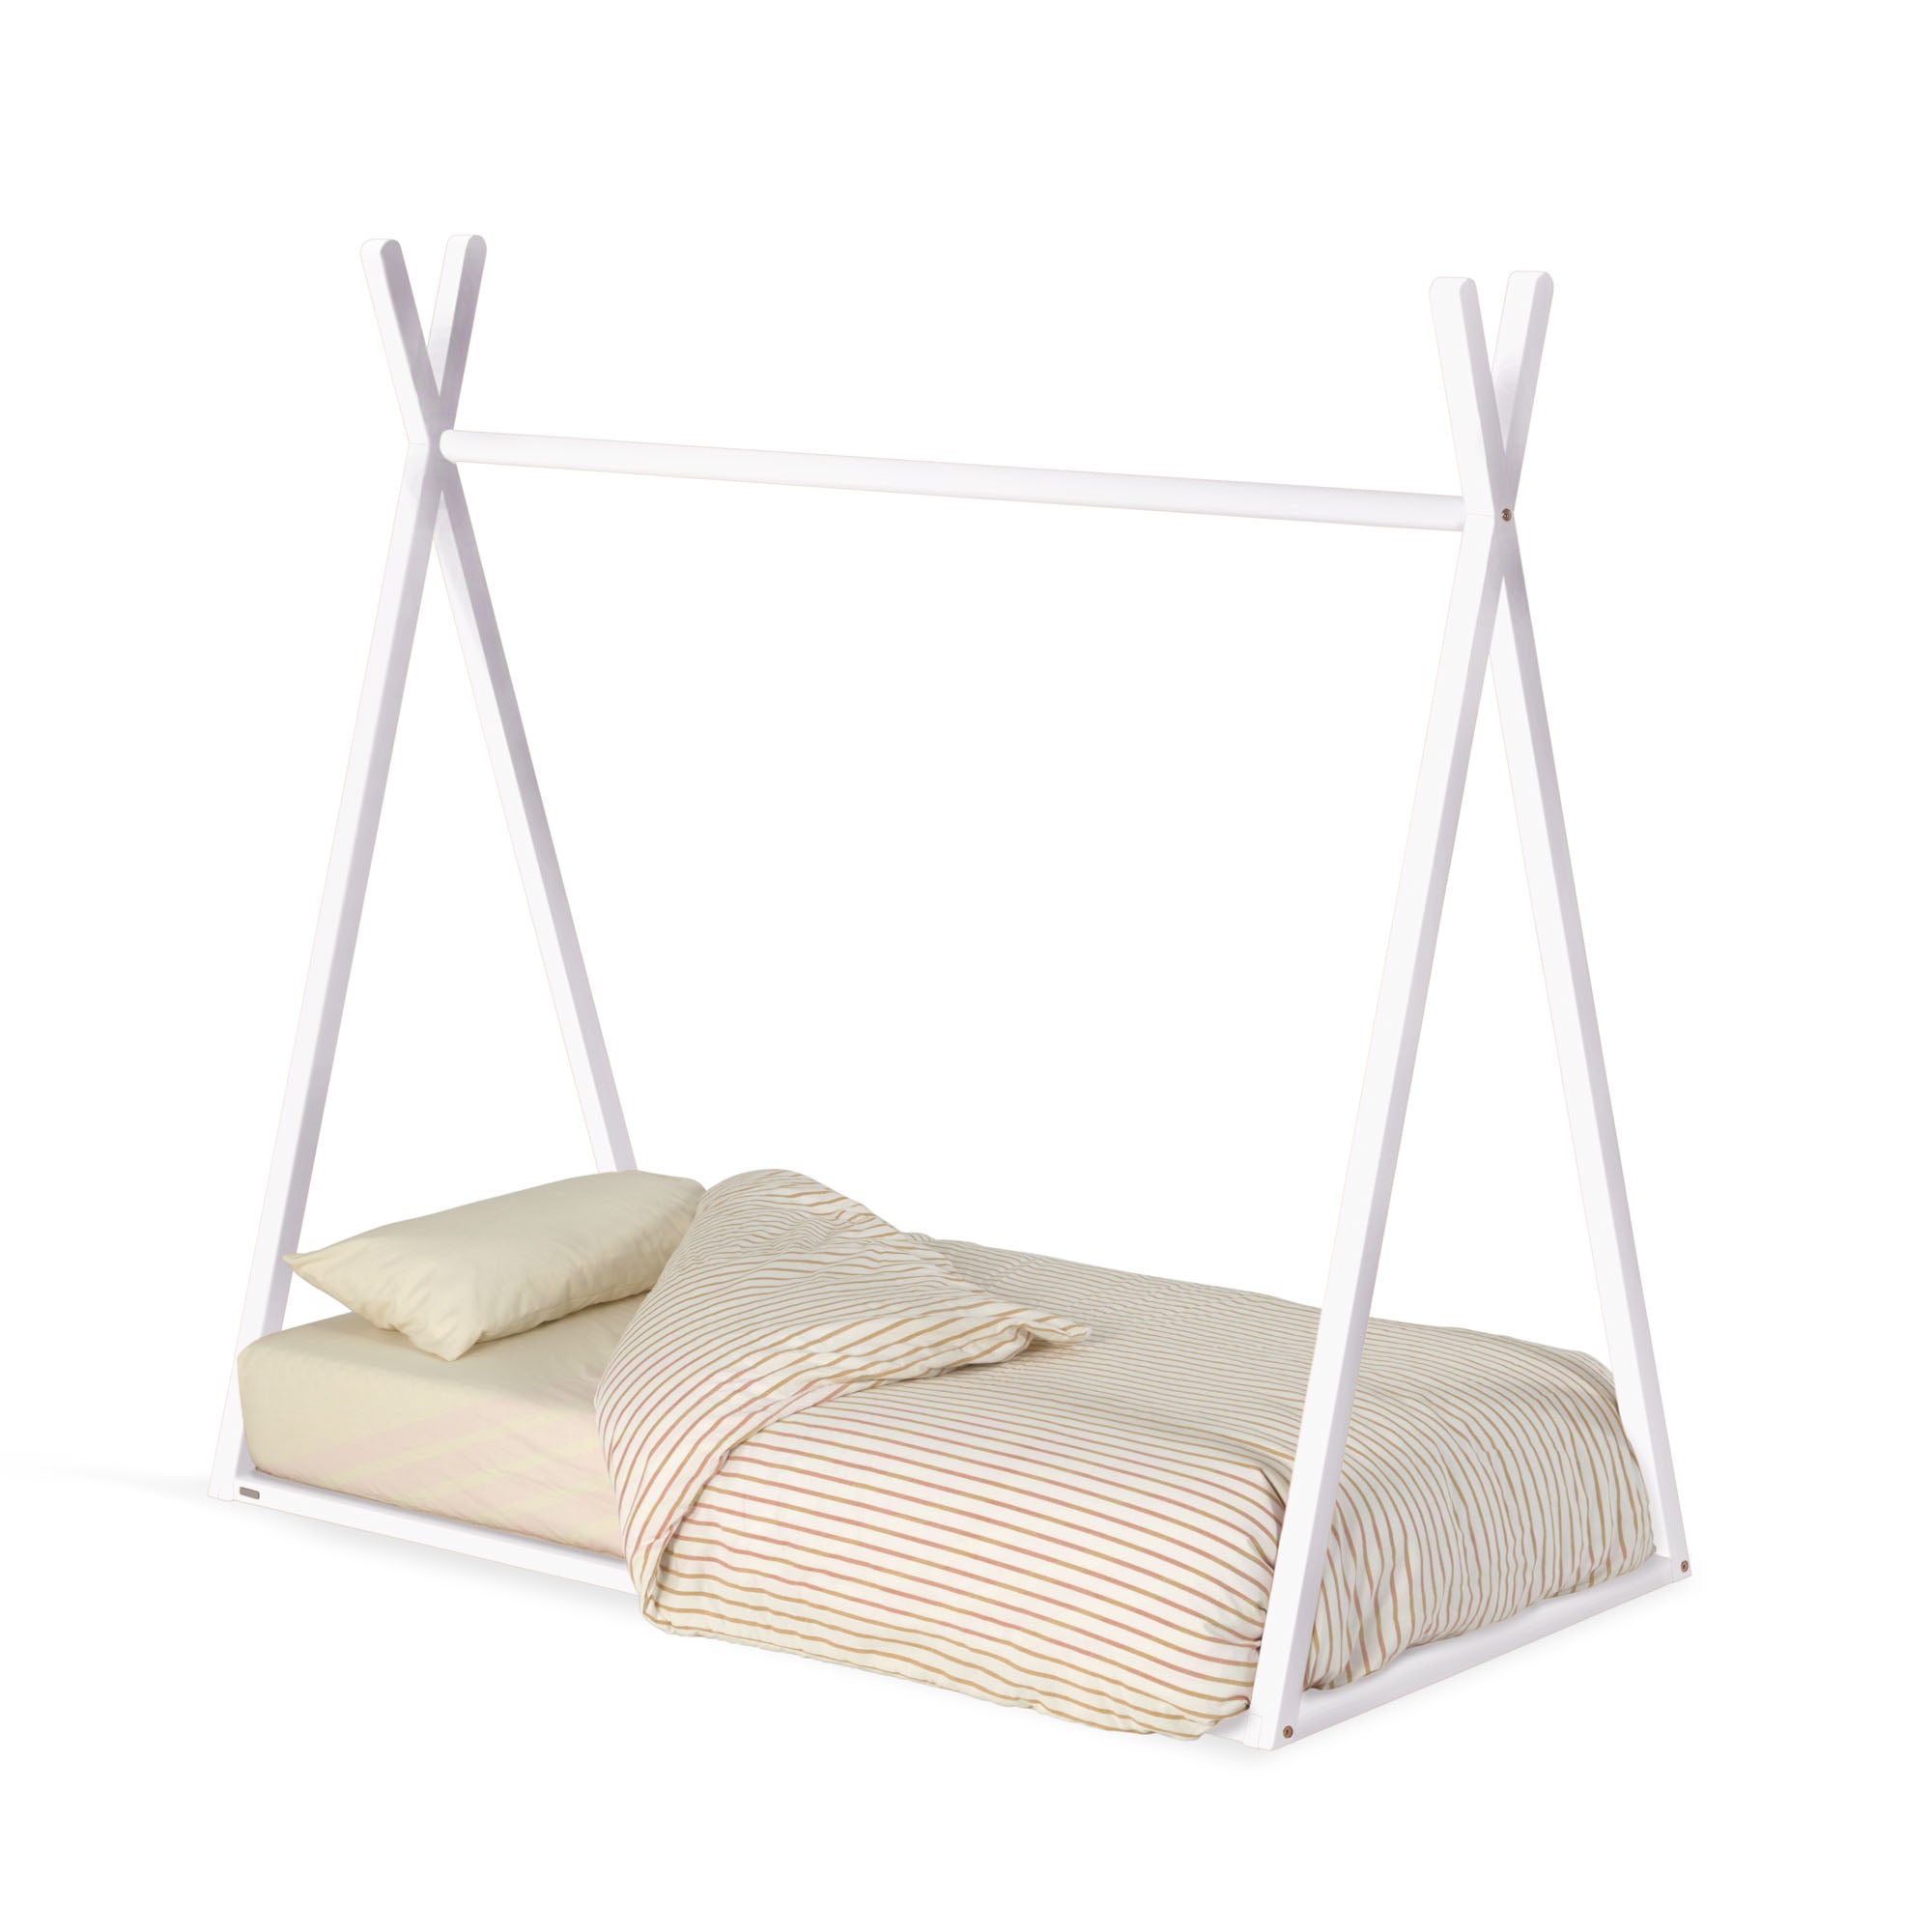 Maralis tipi sátorágy tömör bükkfából, fehér kivitelben, 70 x 140 cm-es matracokhoz